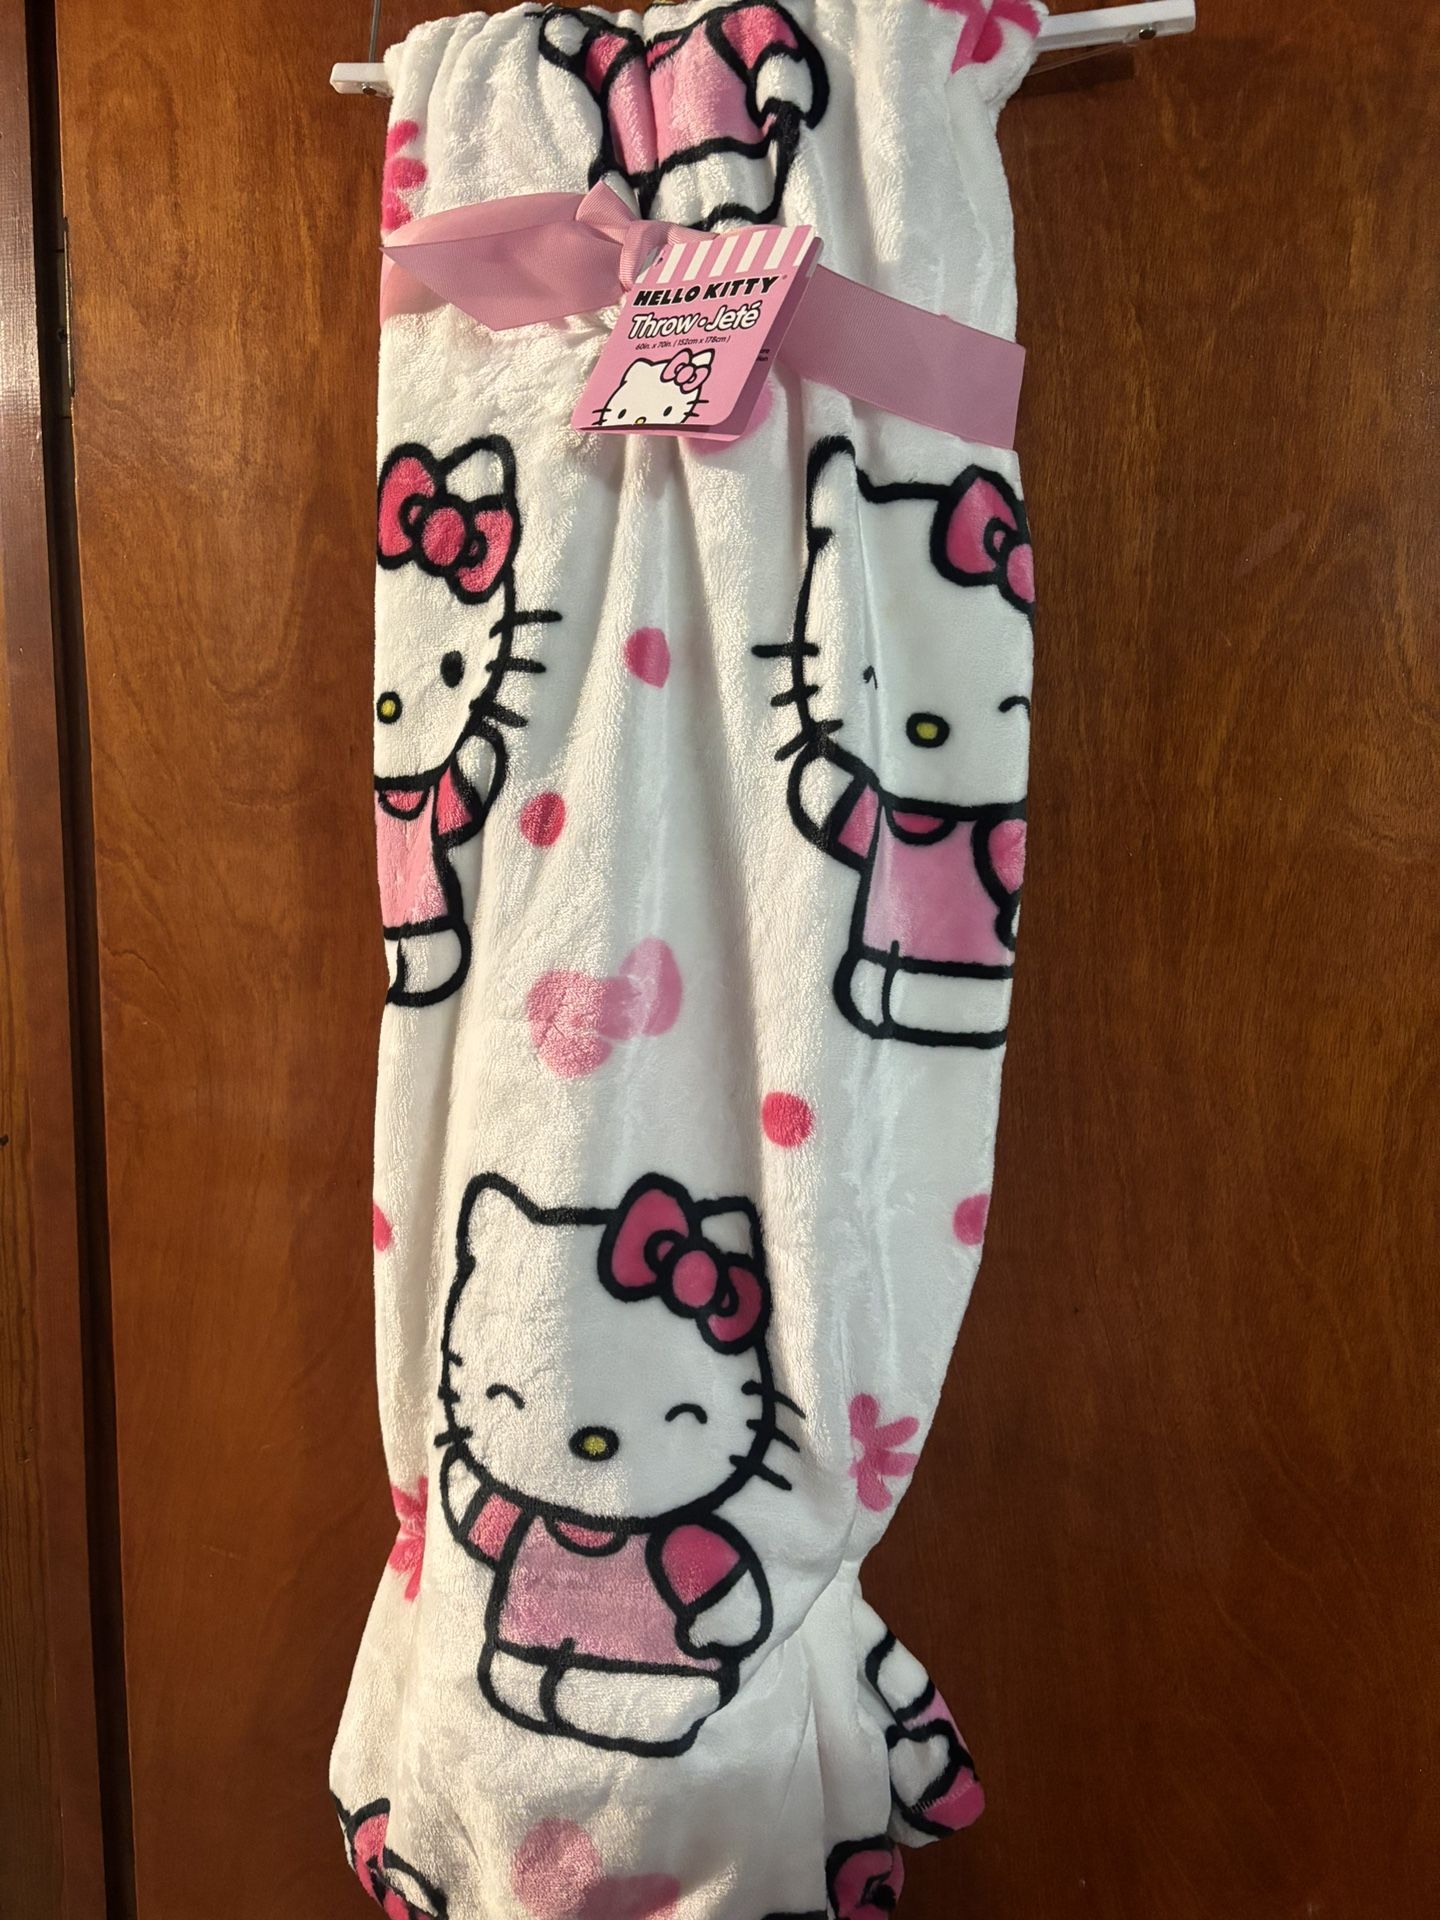 Hello Kitty Flower Daisy Bow Blanket Plush Throw White 60" x 70" Brand NEW